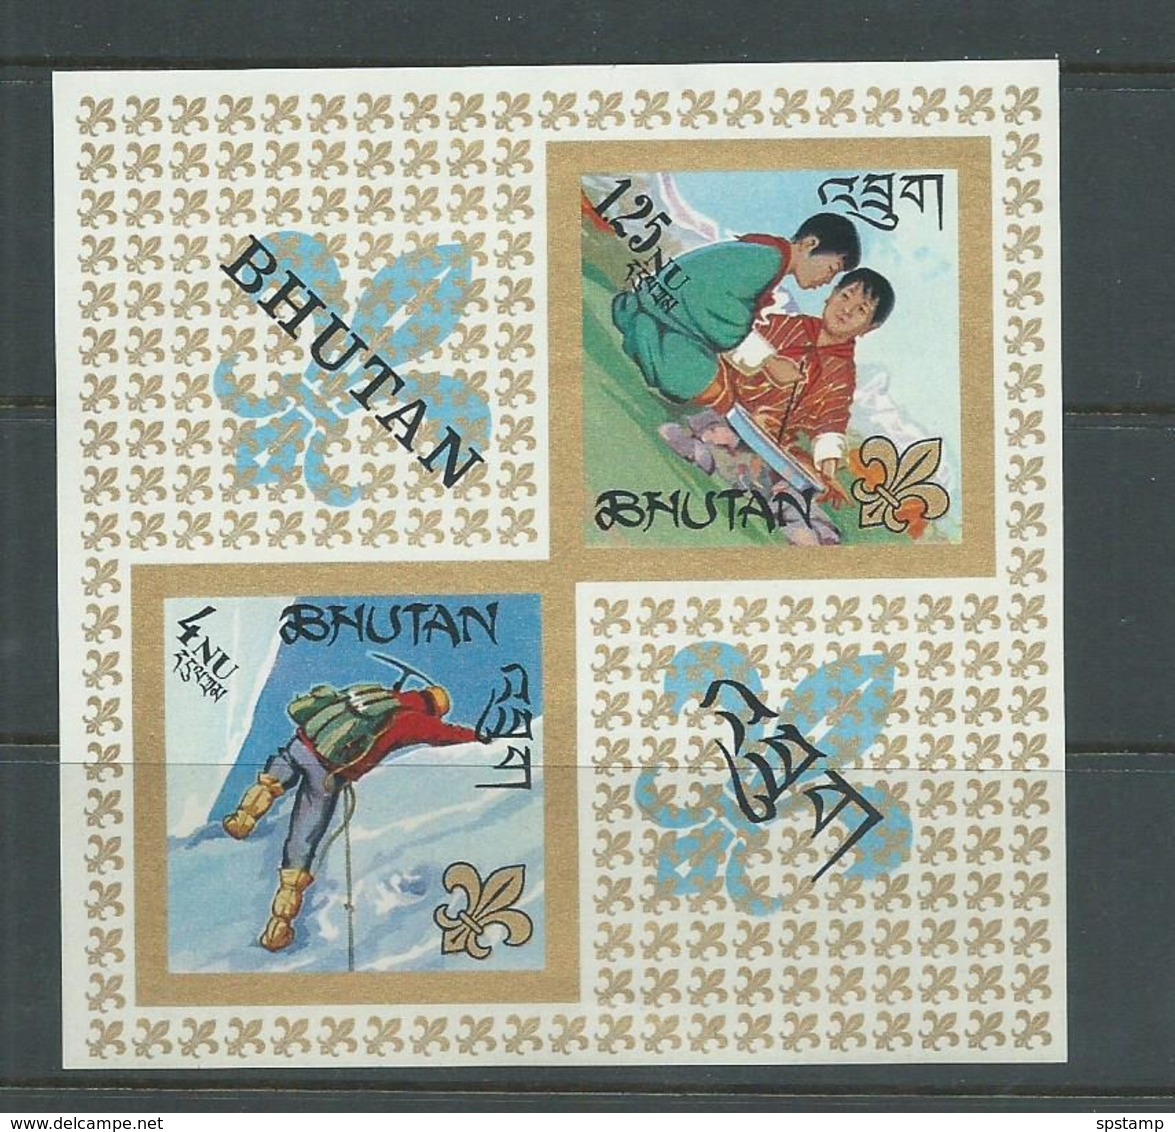 Bhutan 1967 Scout Miniature Sheet MNH - Bhutan